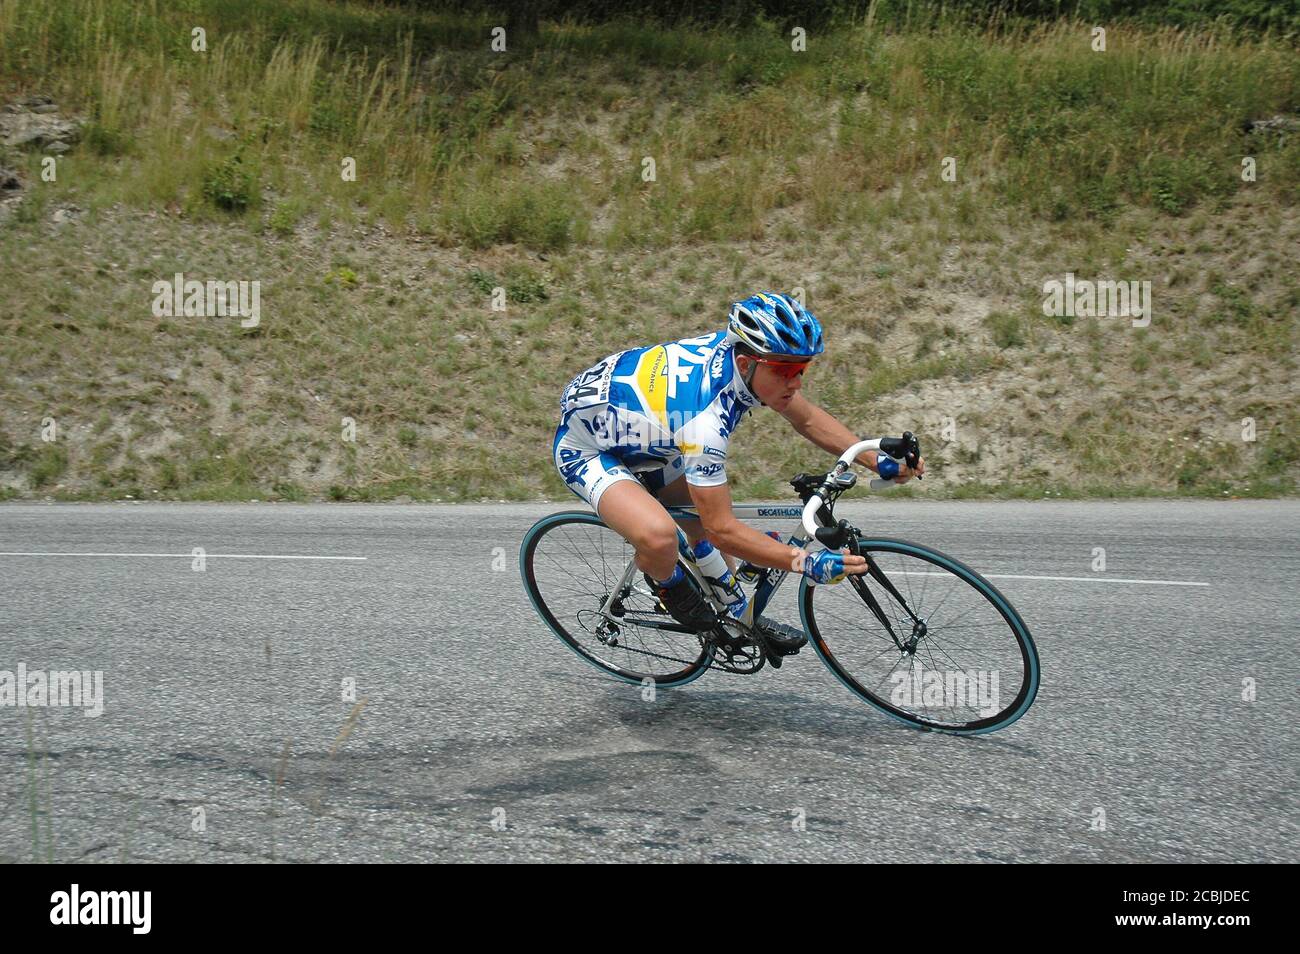 Samuel Dumoulin, der französische Rennradfahrer, der 2005 an der Tour de France - Etappe 11: Courchevel - Briançon teilnahm. Stockfoto